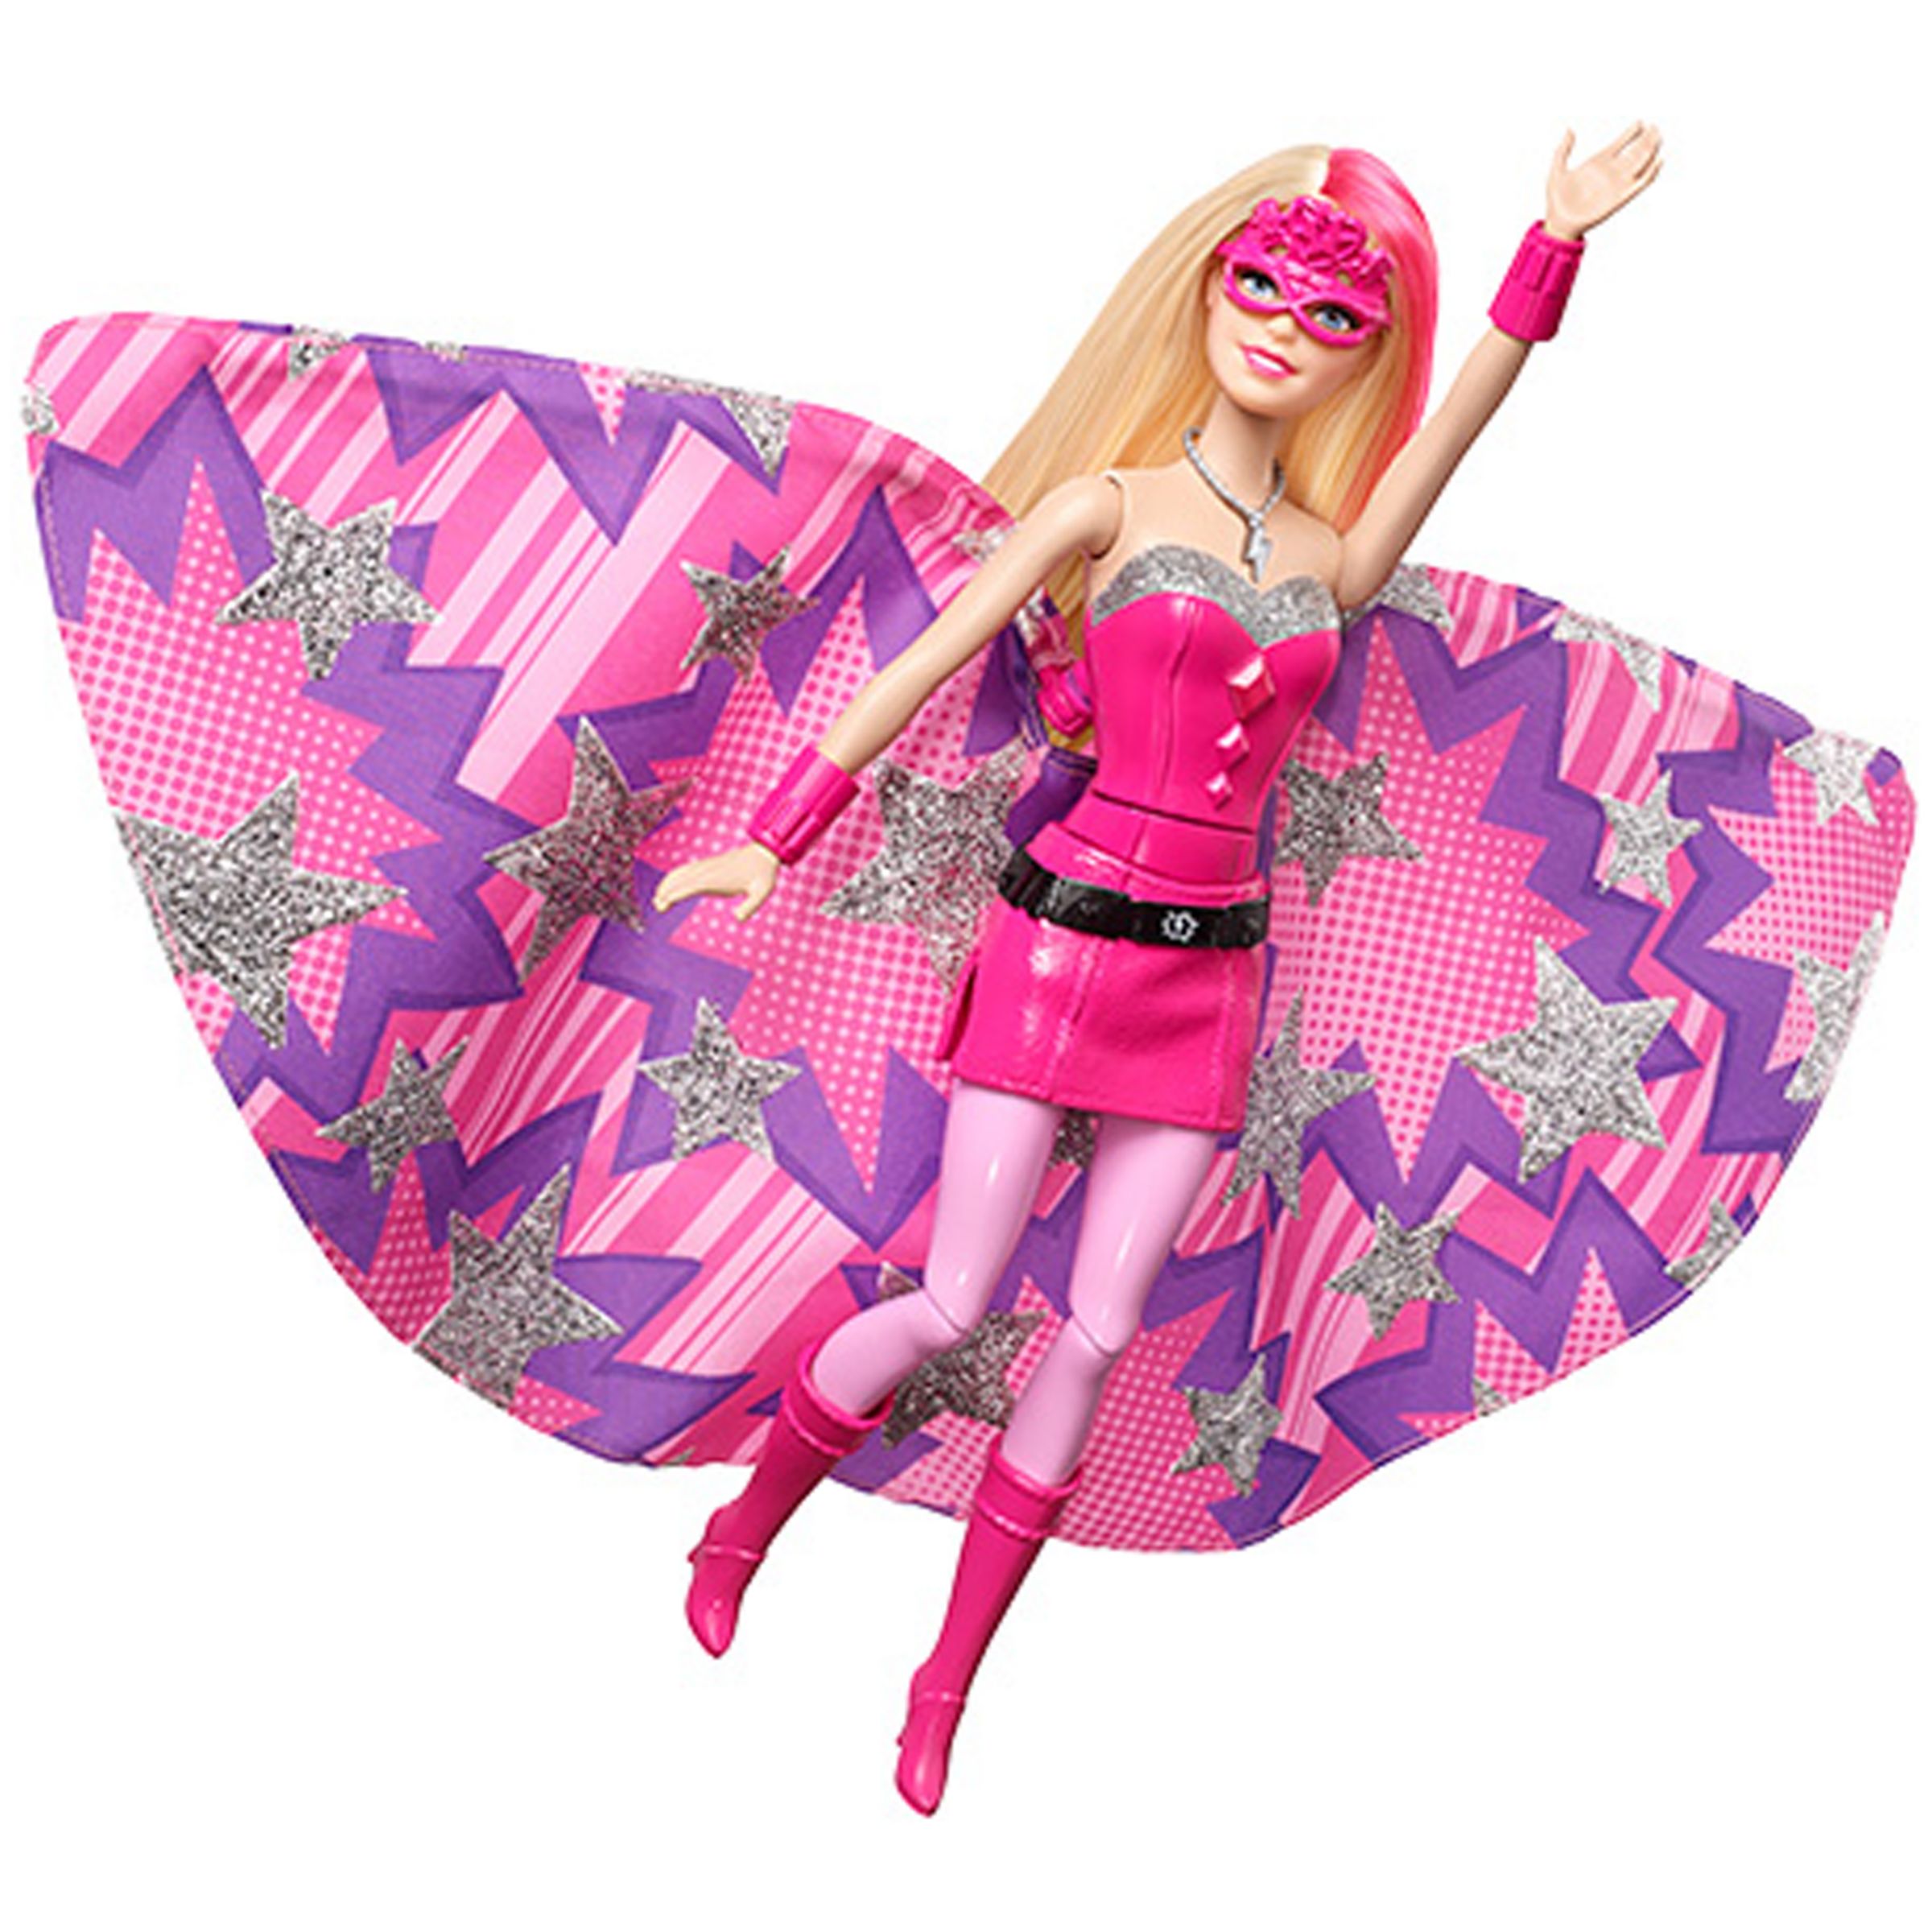 barbie super hero